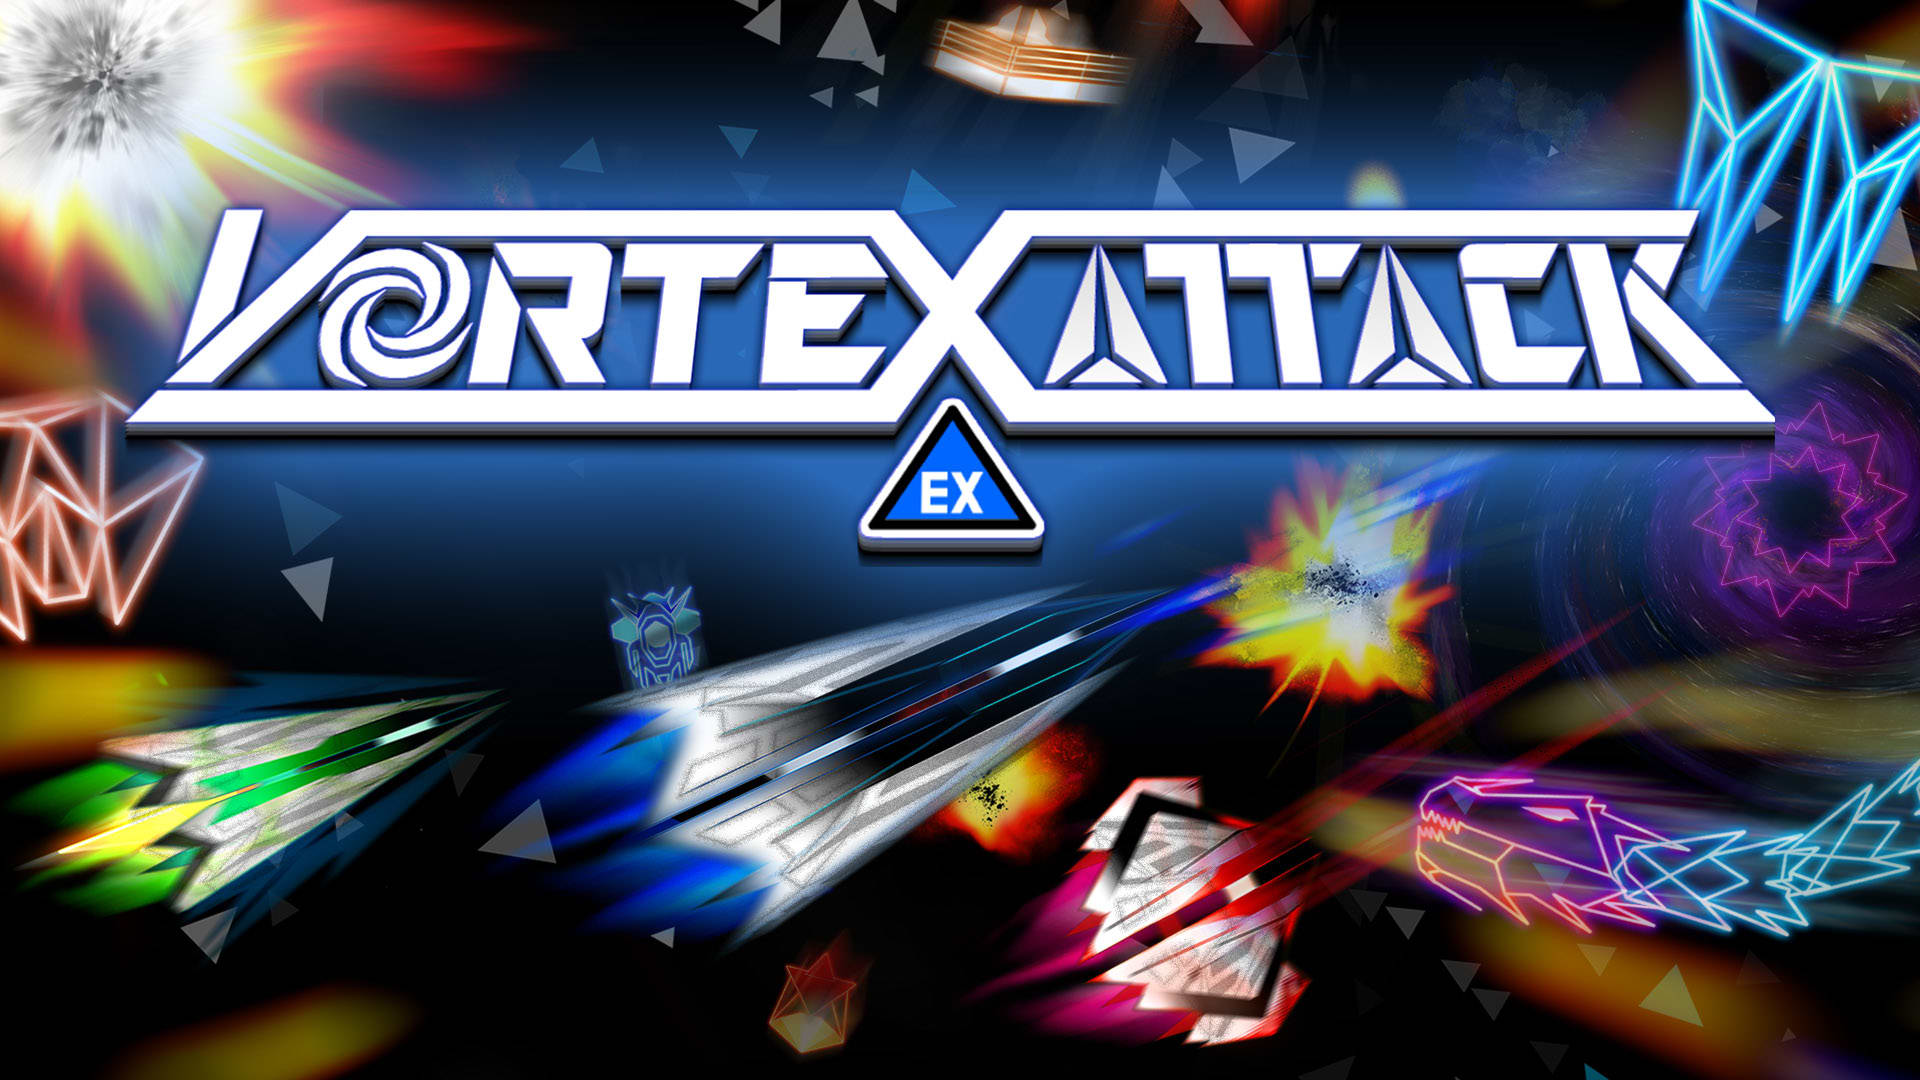 Vortex Attack EX 1